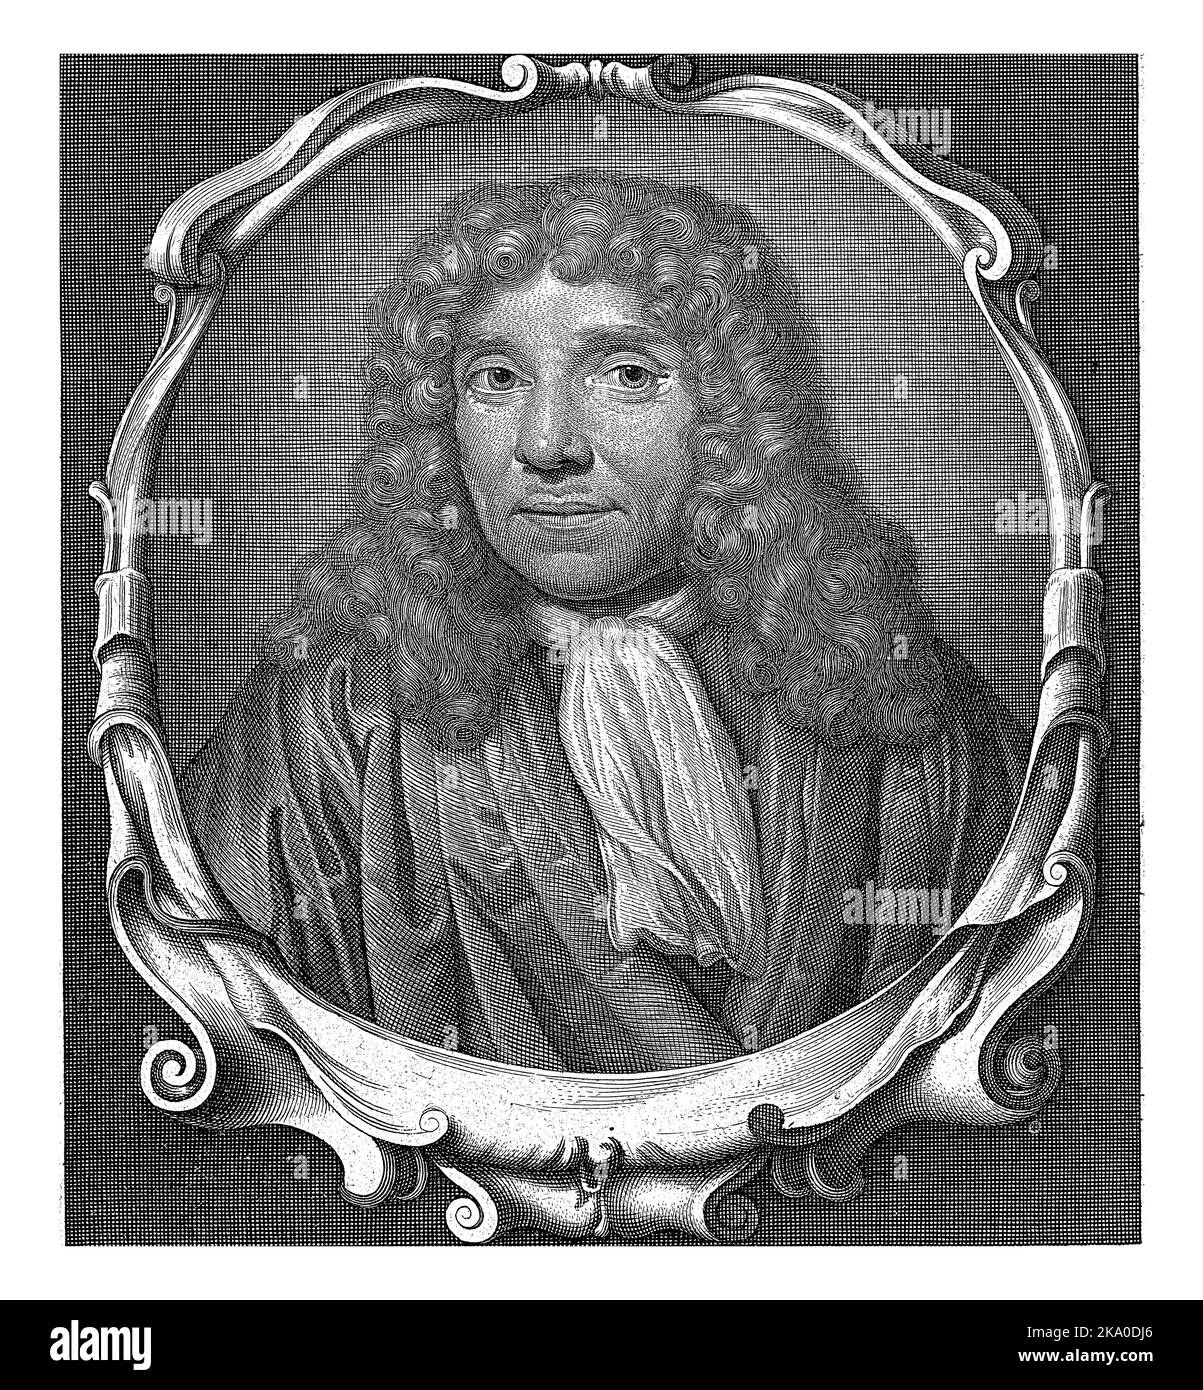 Portrait of Antonie van Leeuwenhoek, Abraham de Blois, after Jan Verkolje (I), 1679 - 1717 Portrait of Antonie van Leeuwenhoek, bust in oval frame wit Stock Photo